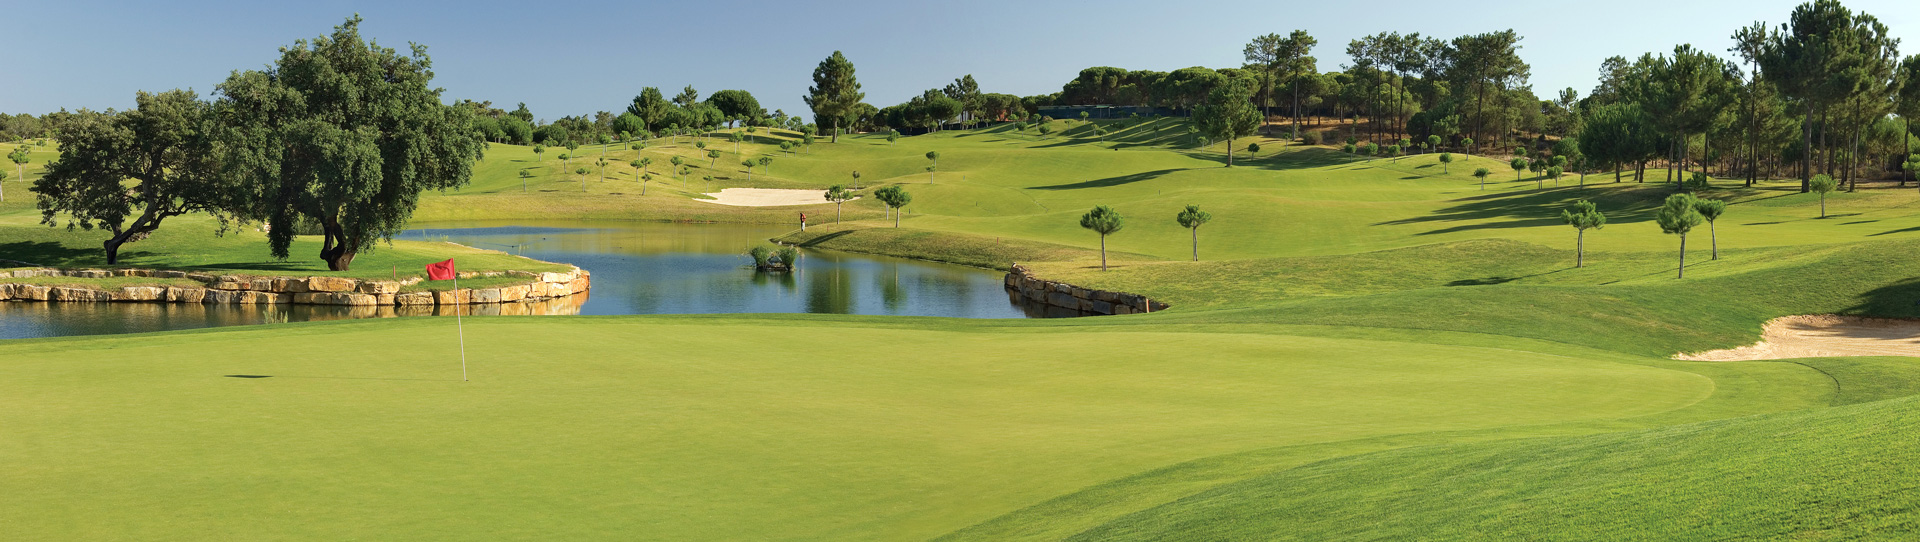 Portugal golf courses - Pinheiros Altos - Photo 2